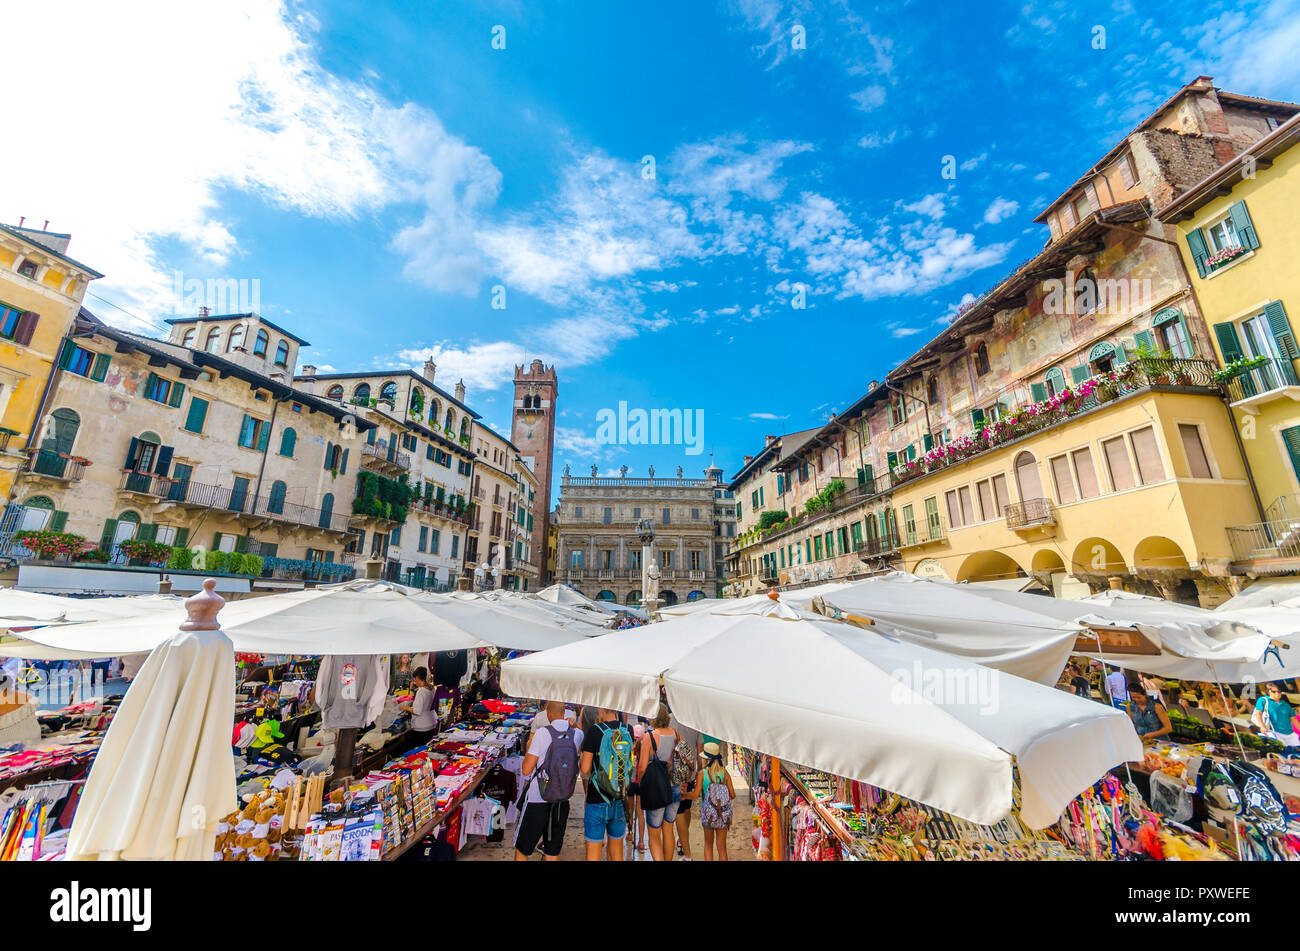 L'Italia, Verona, vista di Piazza delle Erbe con bancarelle e la Torre del Gardello in background Foto Stock